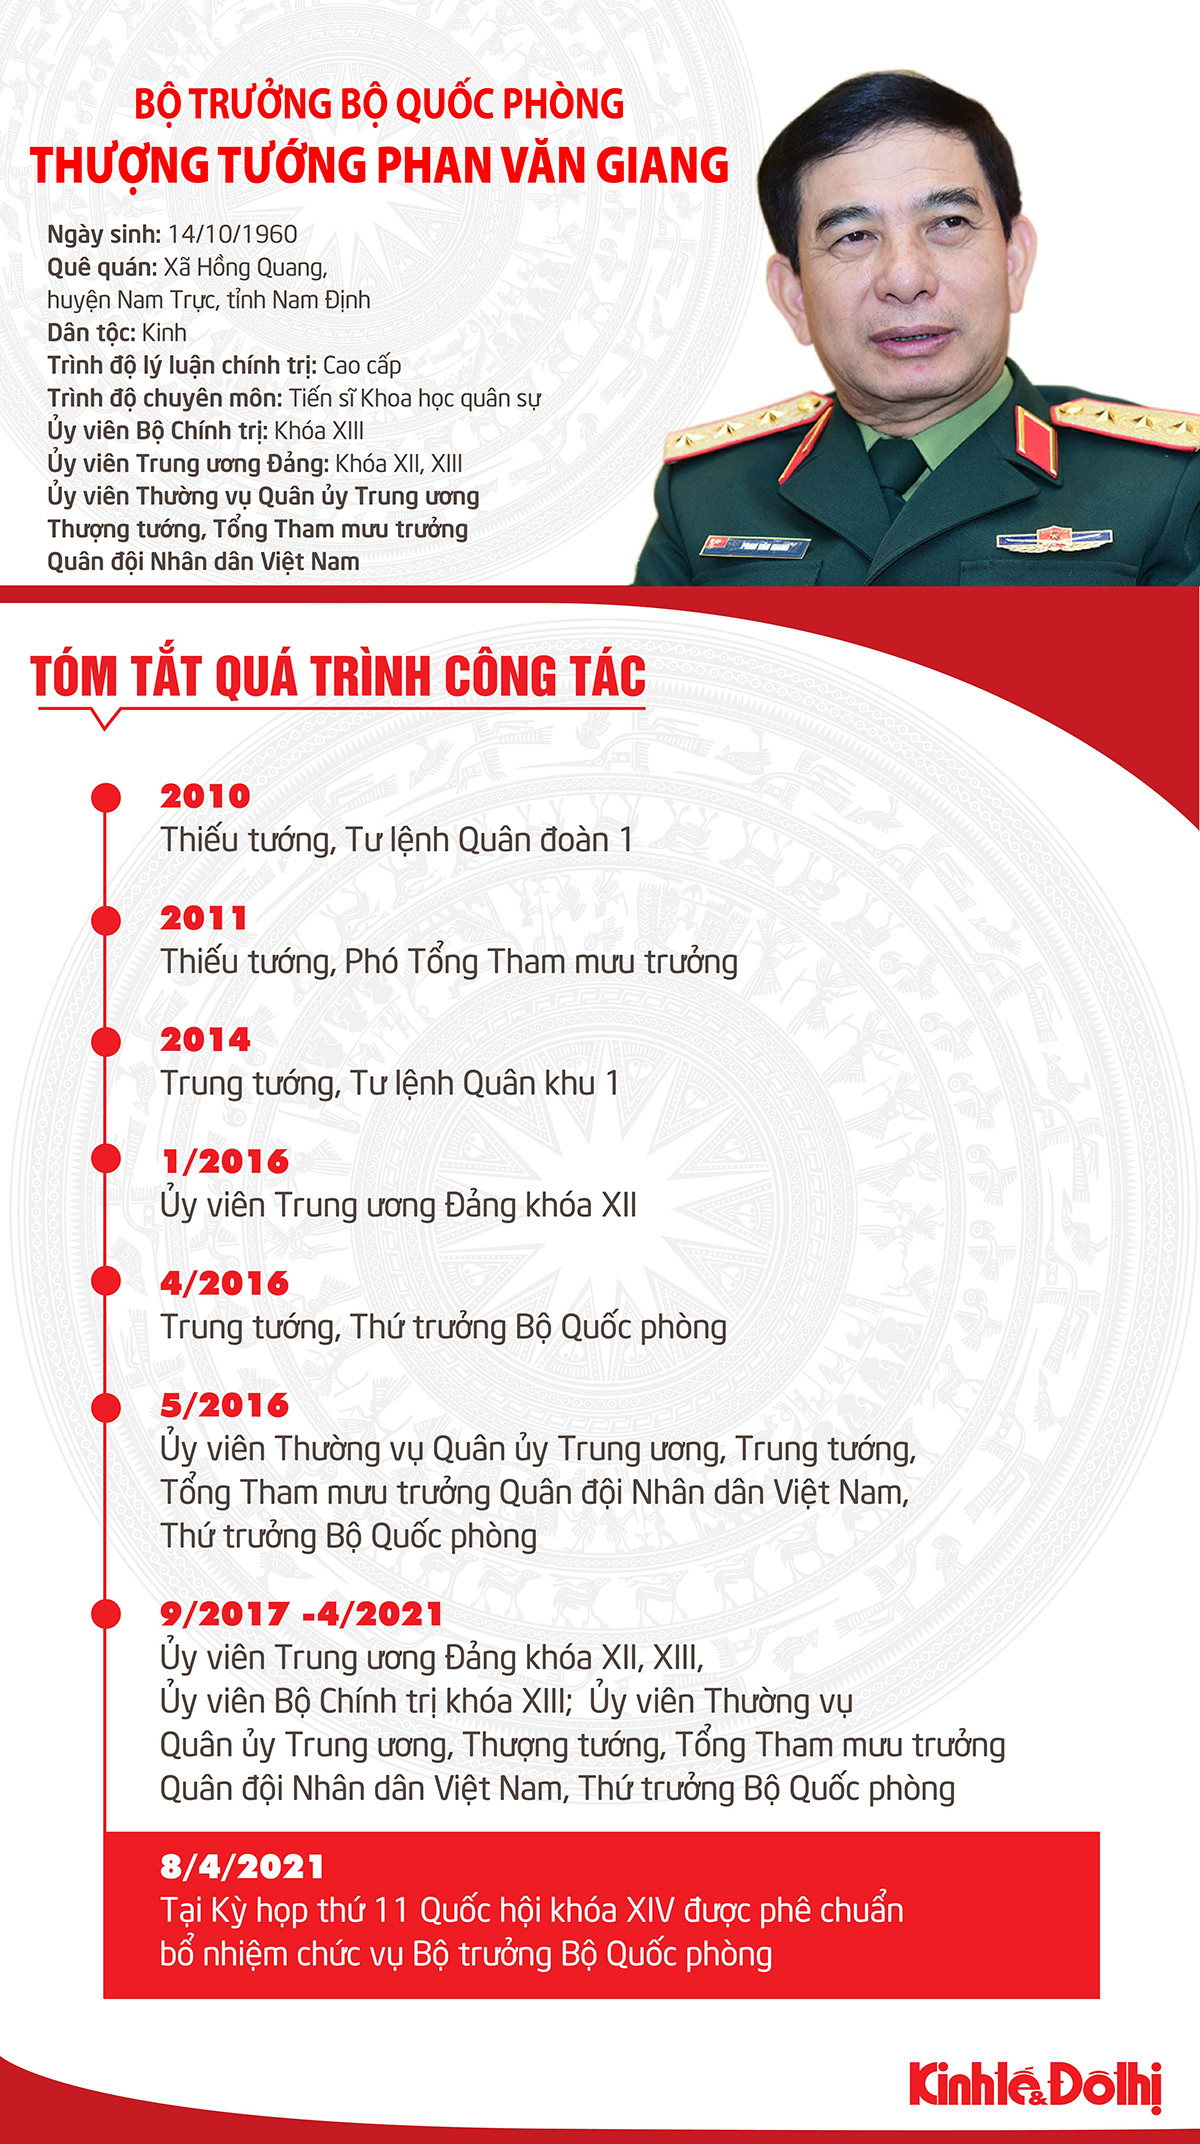 (Infographic) Tóm tắt quá trình công tác của Bộ trưởng Bộ Quốc phòng Thượng tướng Phan Văn Giang